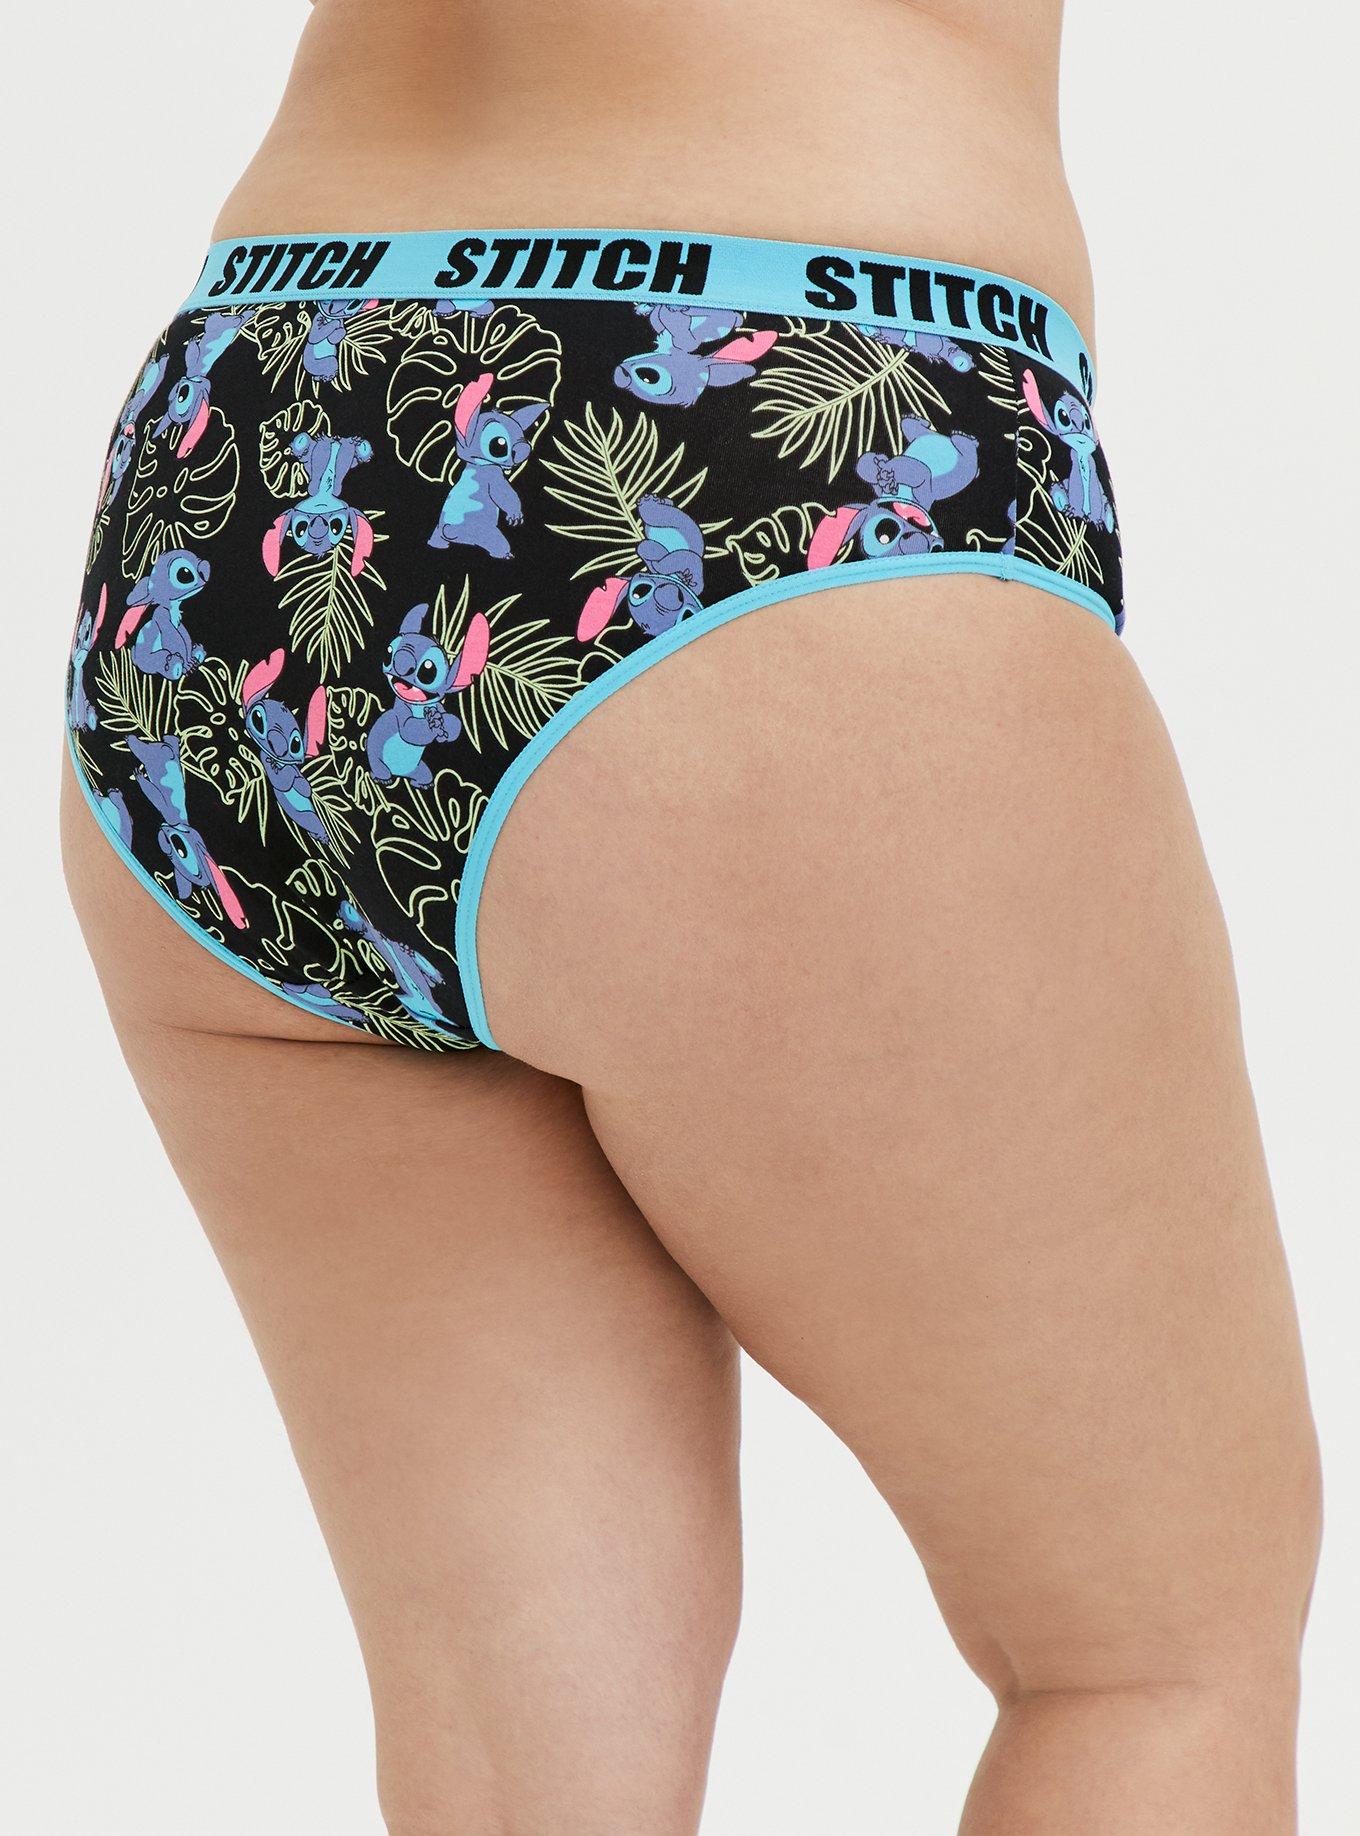 Disney Stitch Girls Stretch Hipster Briefs Underwear, 4-Pack Sizes